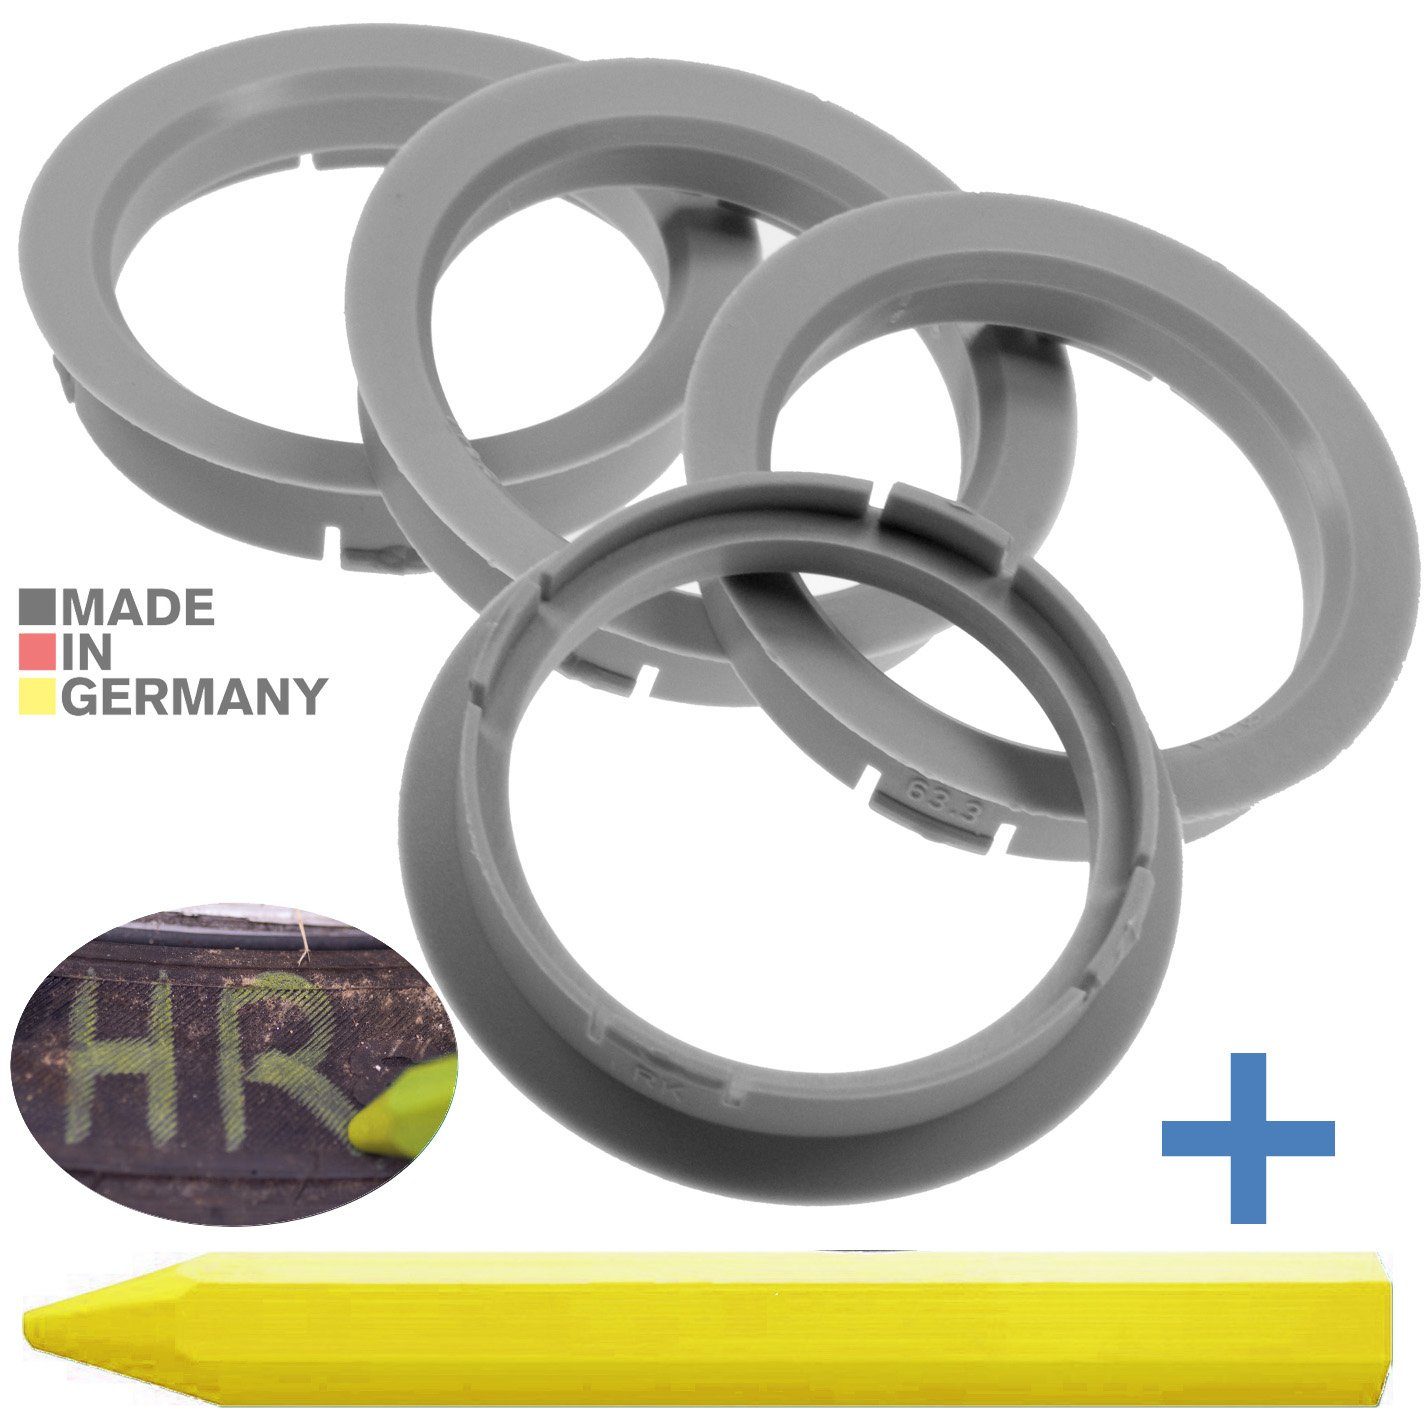 RKC Reifenstift 4X Zentrierringe Hellgrau Felgen Ringe + 1x Reifen Kreide Fett Stift, Maße: 63,3 x 54,1 mm